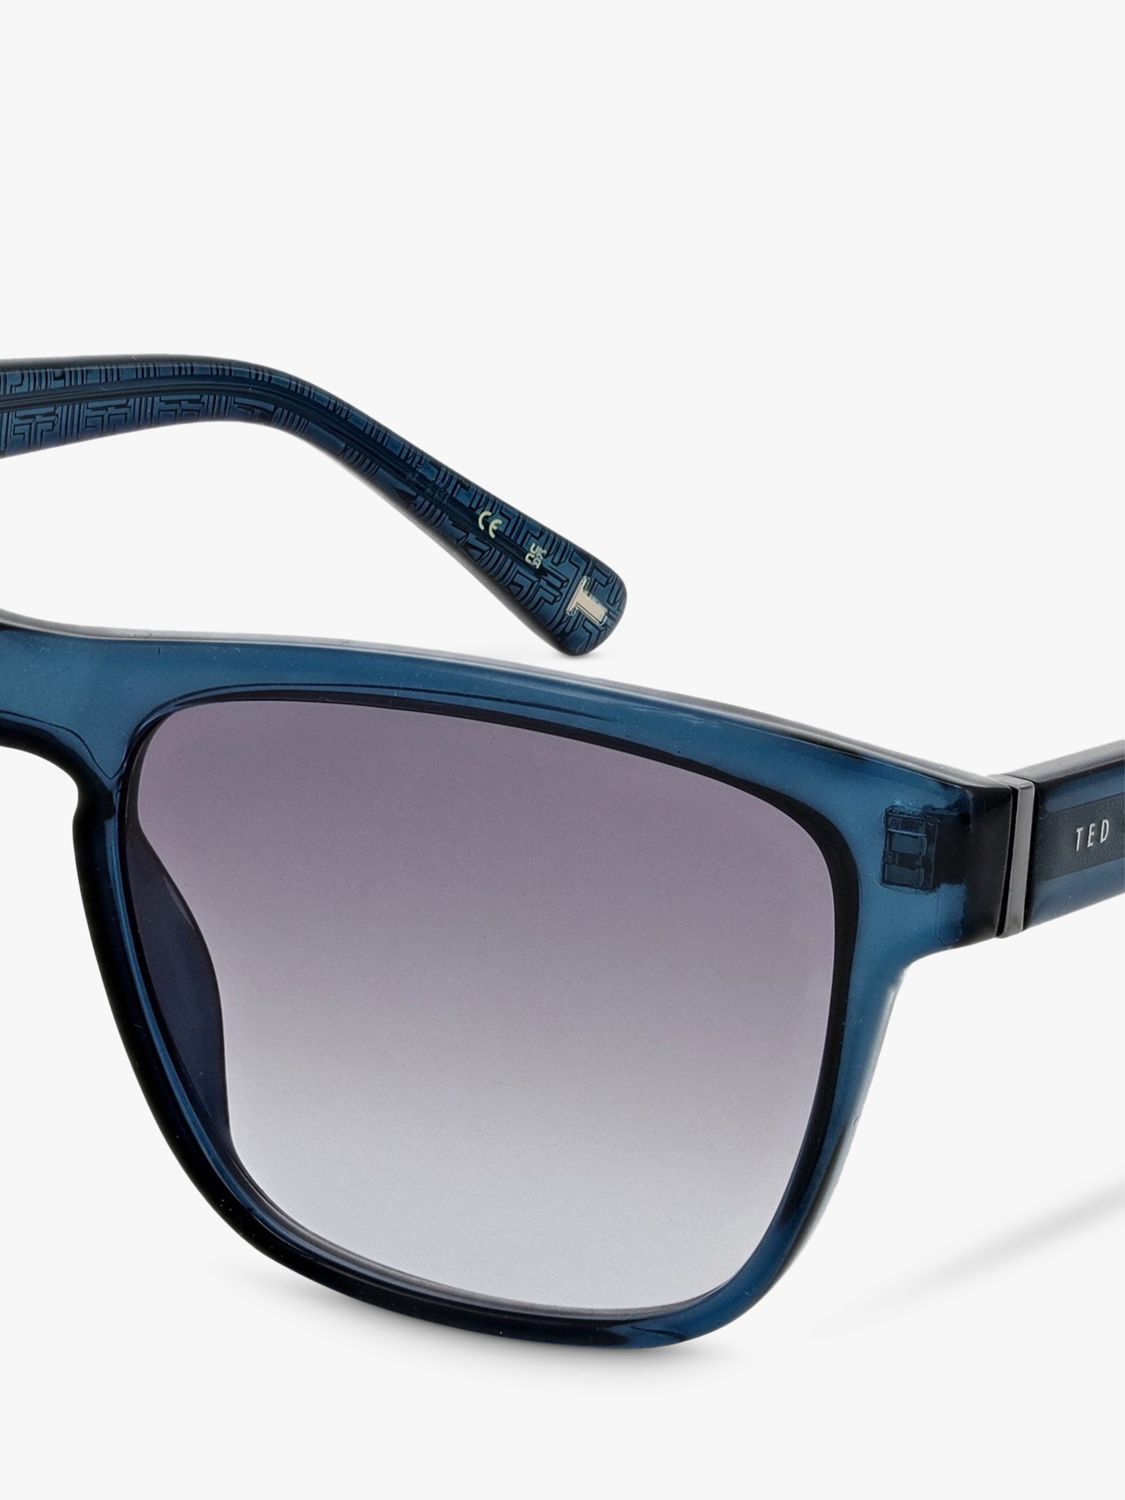 Ted Baker Men's Classic Rectangular Sunglasses, Gloss Dark Crystal Teal